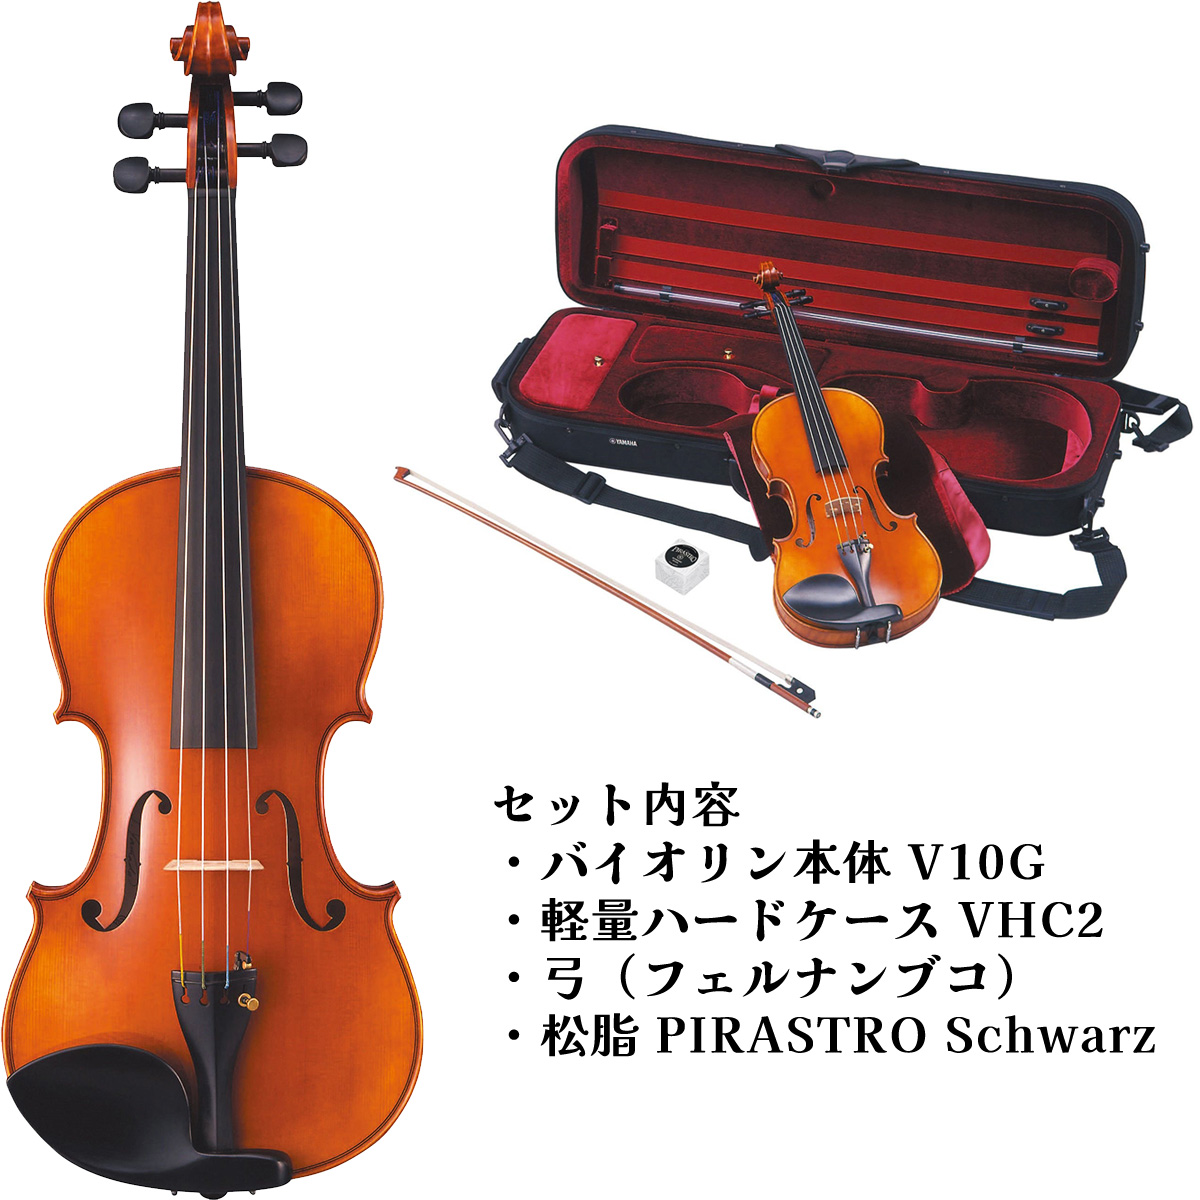 国産製造 スズキバイオリン 4/4 No280 1976年 杉藤弓 - 弦楽器